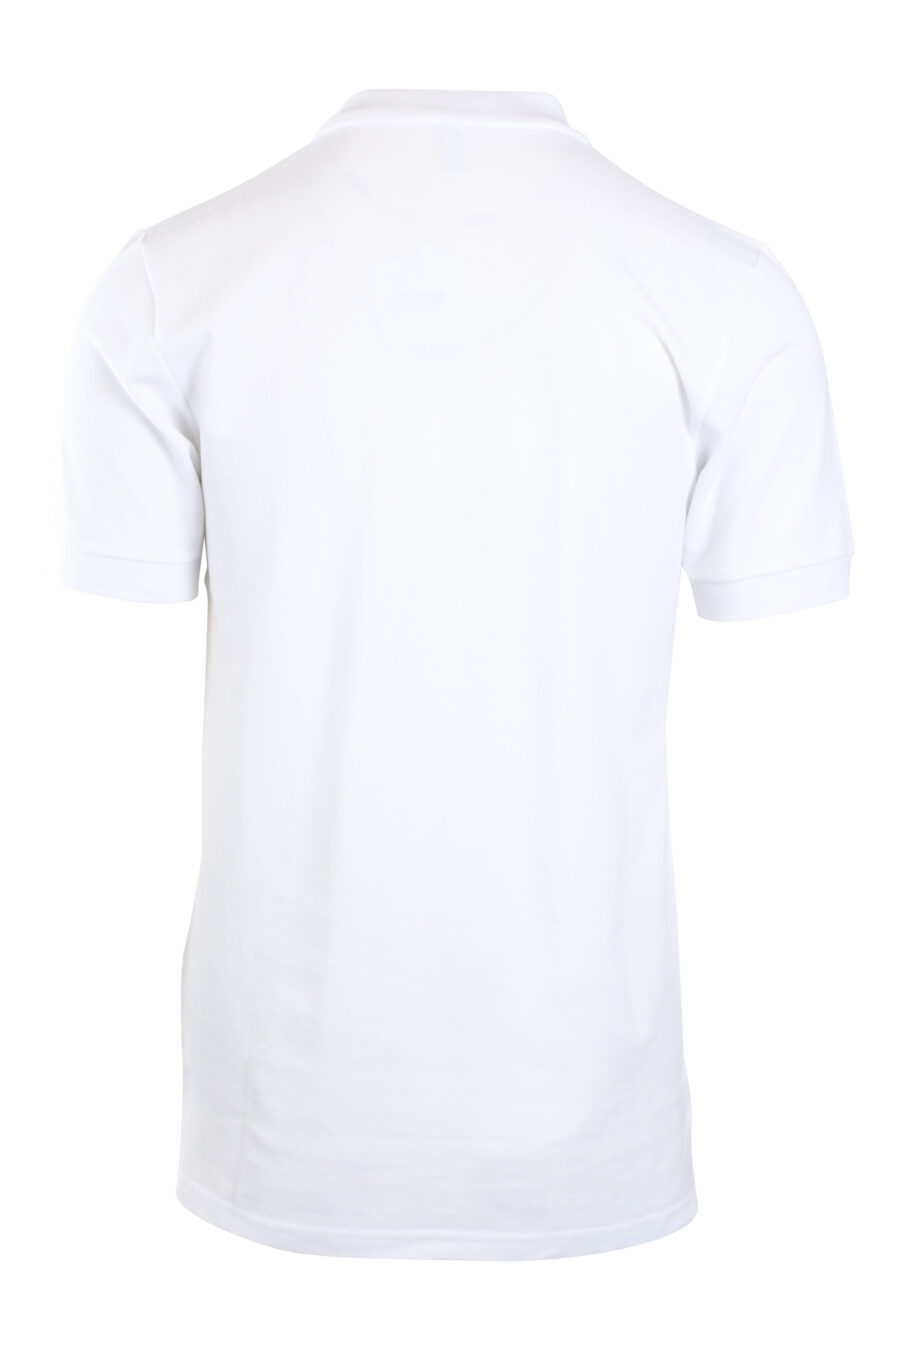 White polo shirt with black mini-logo "swim" - IMG 2182